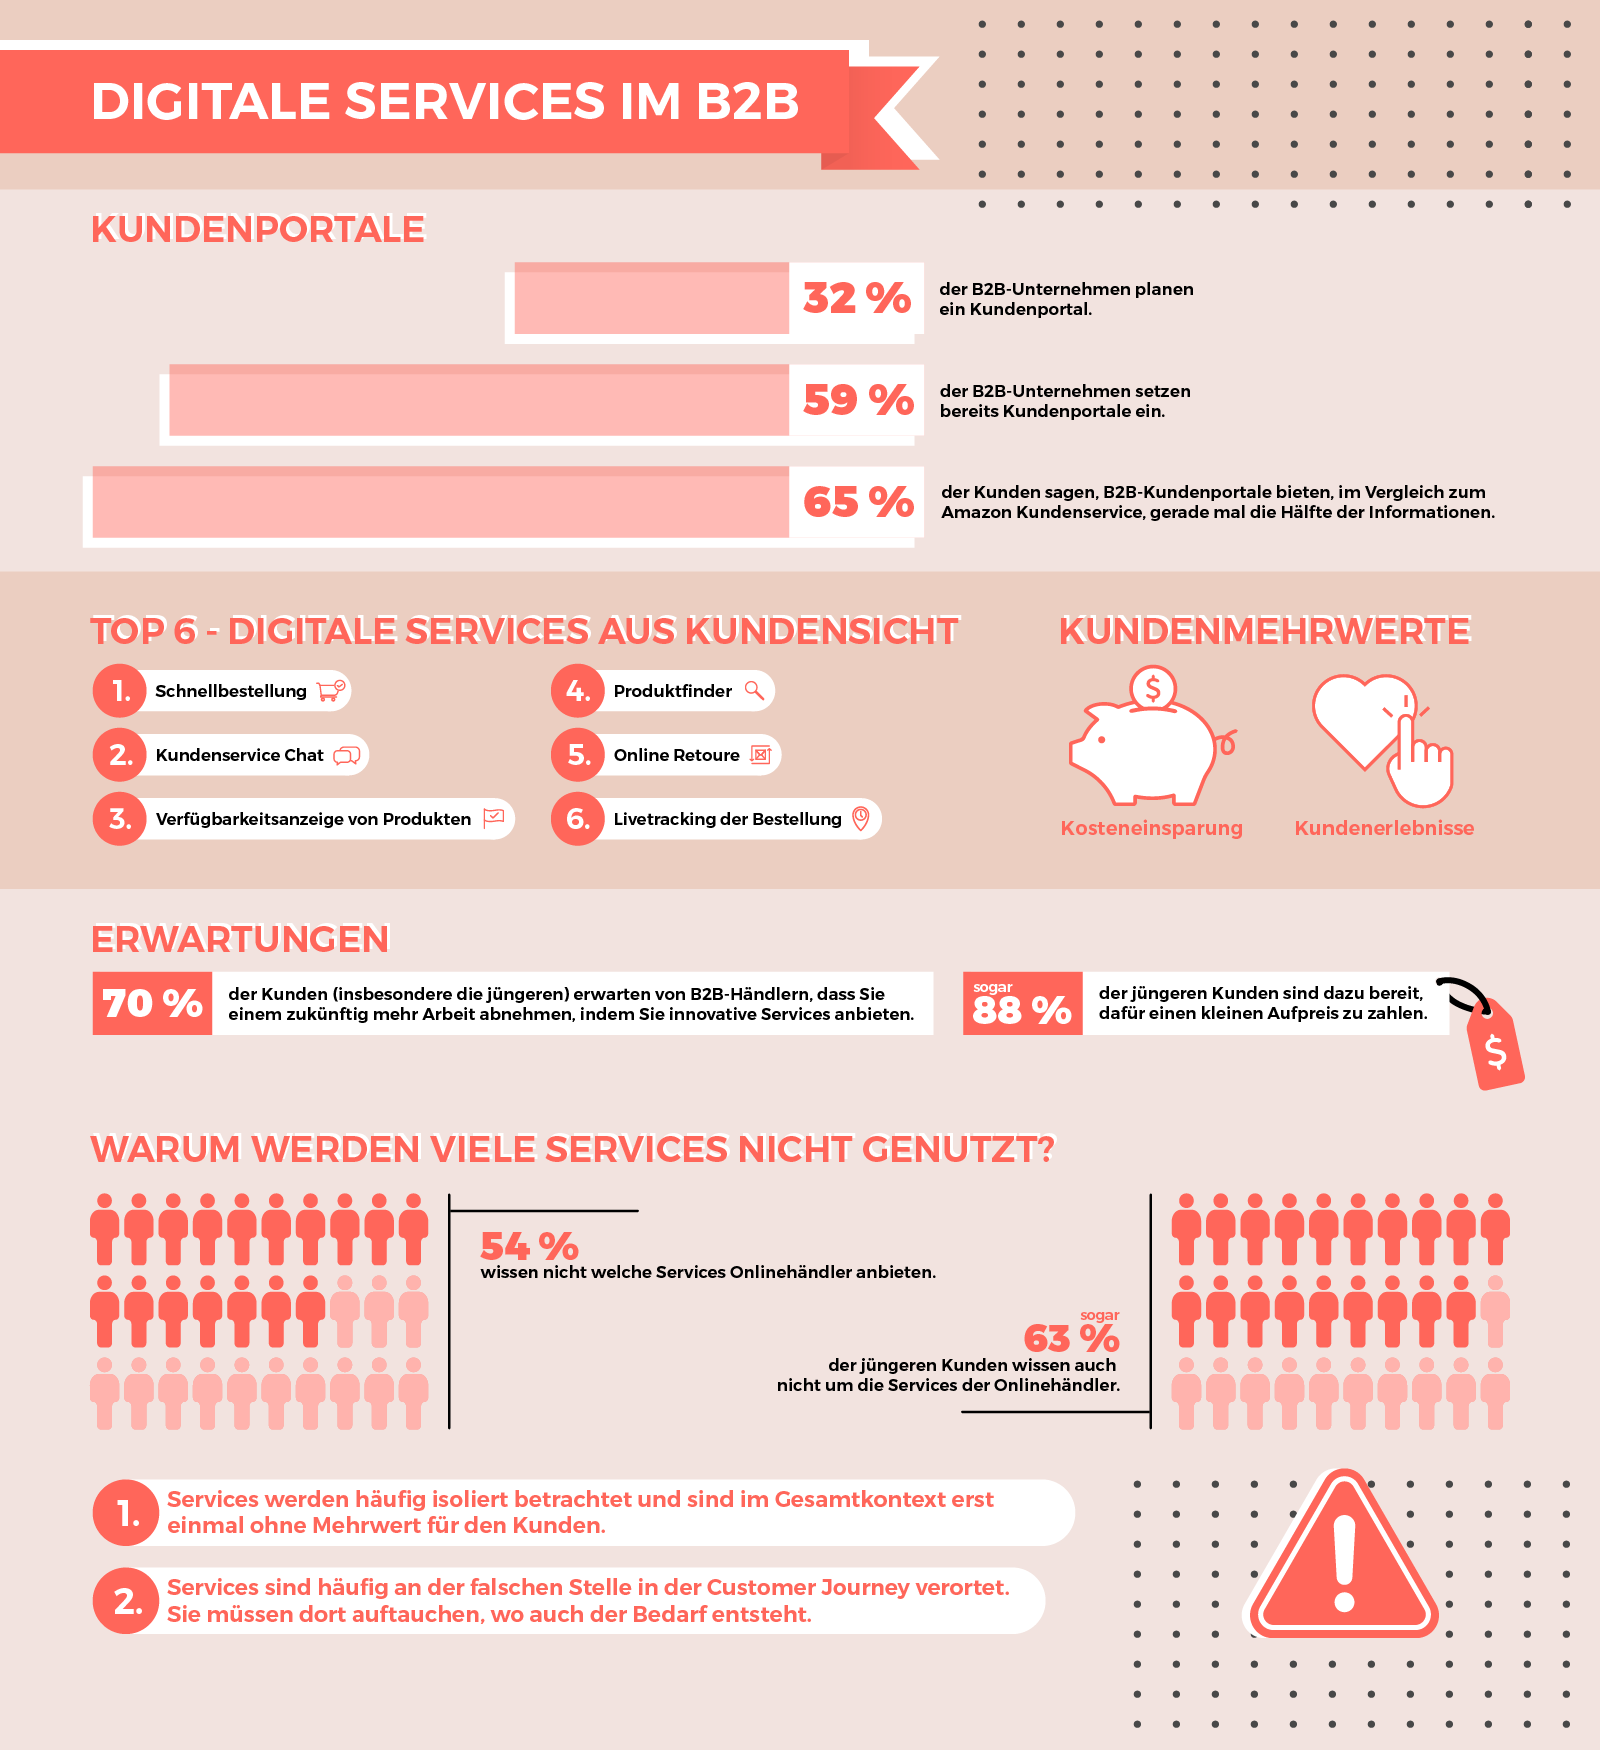 Die Abbildung zeigt eine Übersicht über Digitale Services im B2B und deren Nutzung, Erwartung, und Mehrwerte.